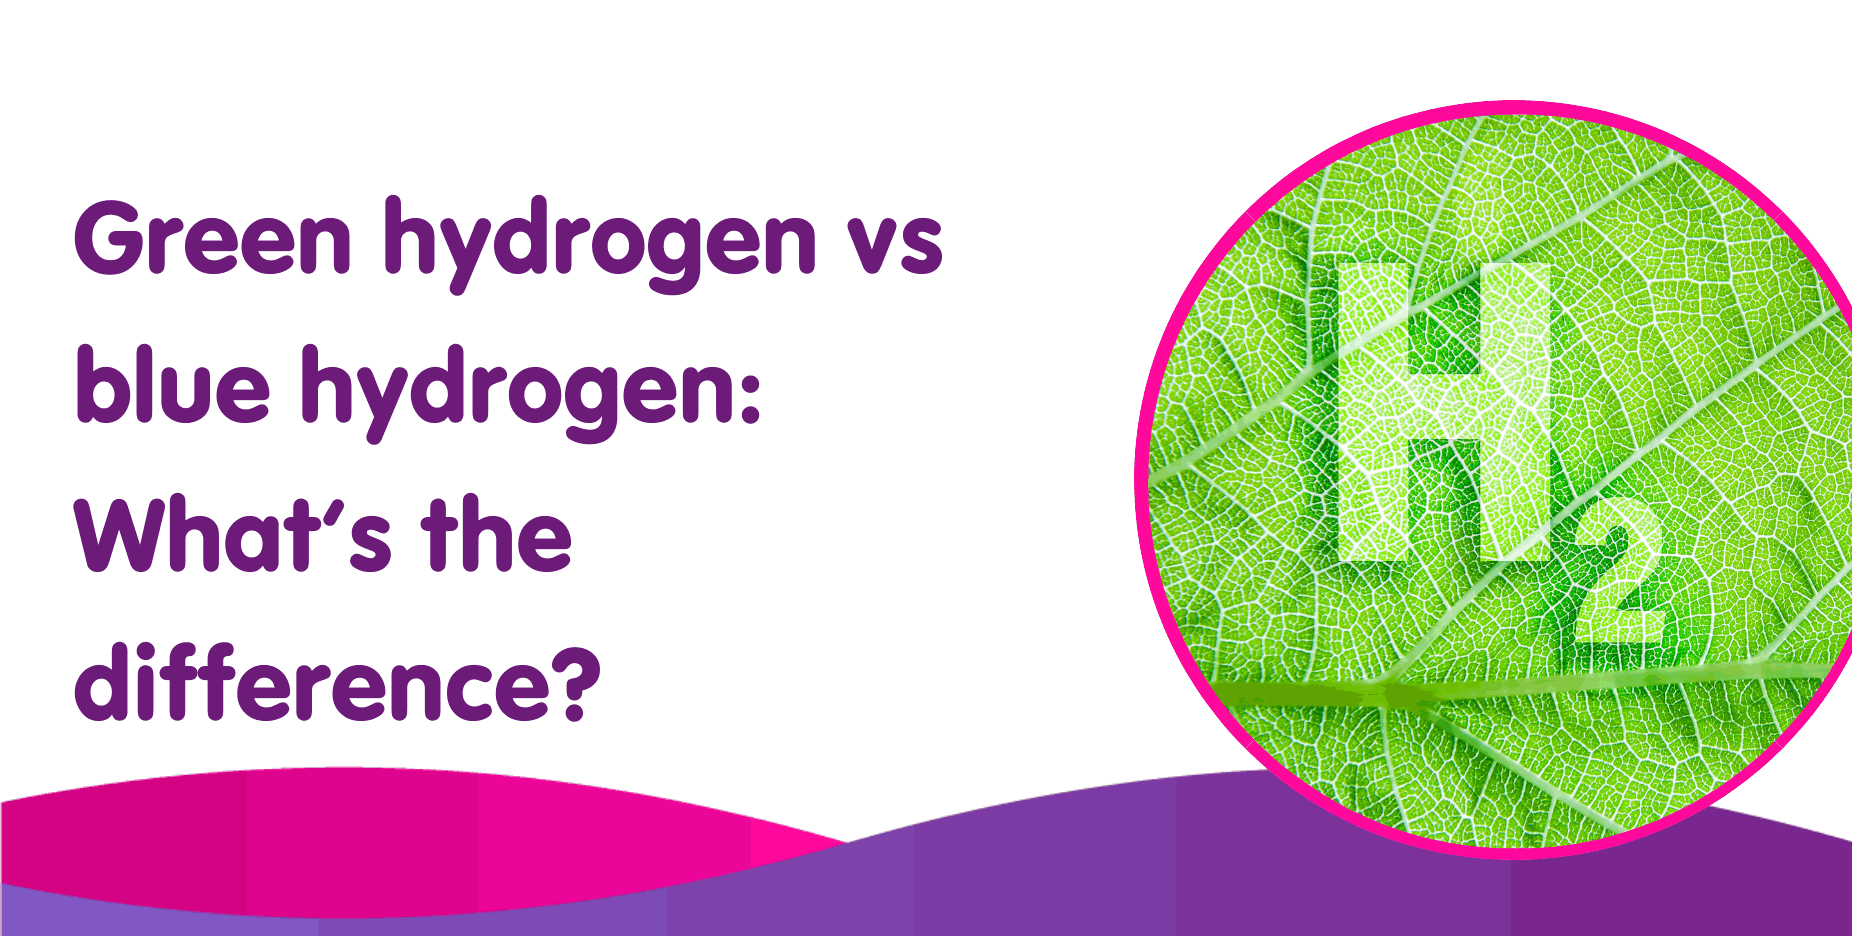 Green hydrogen vs blue hydrogen